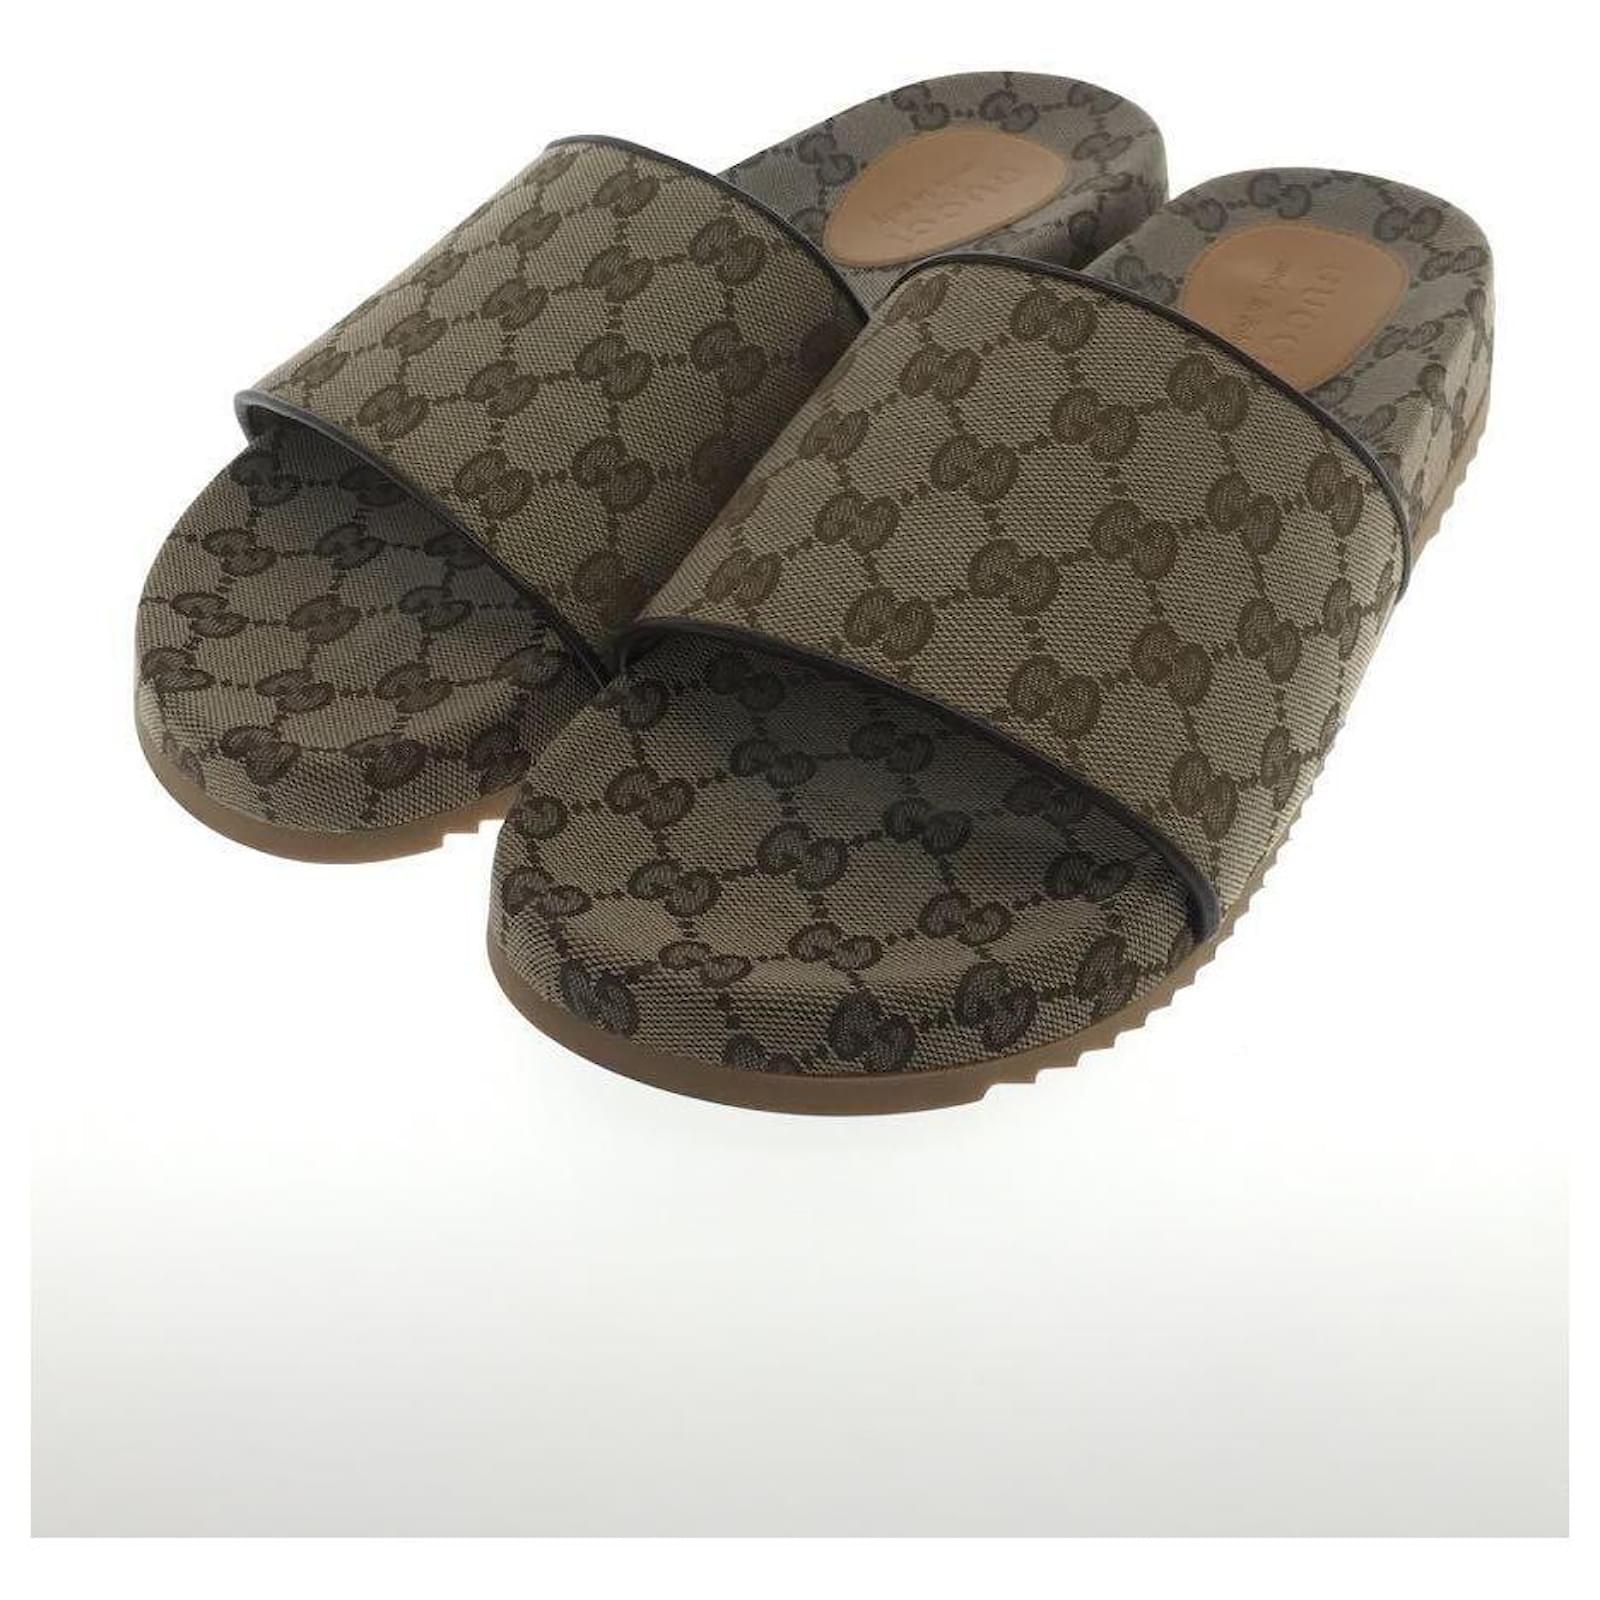 Gucci Men's GG Slide Sandal